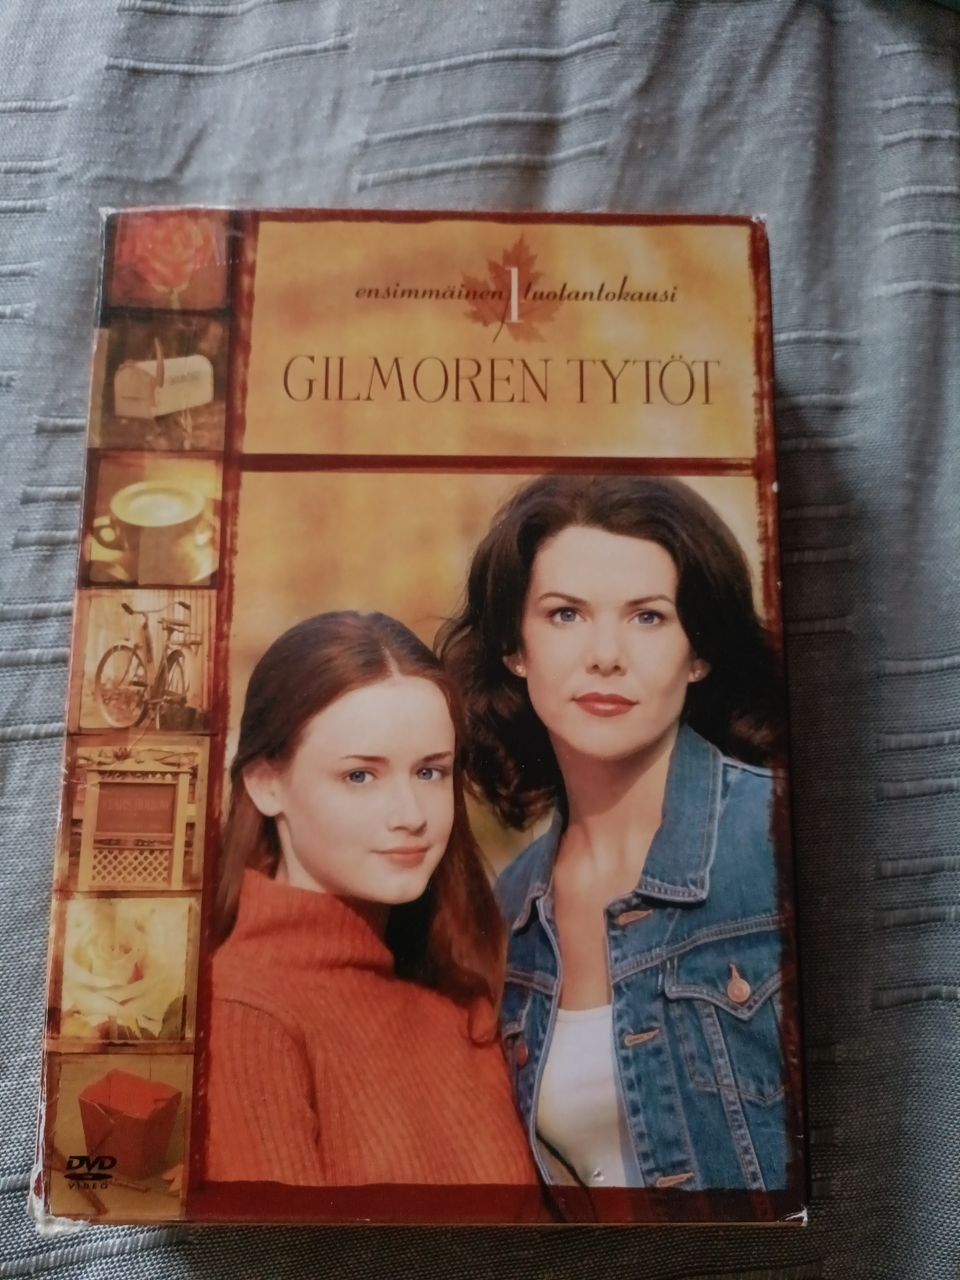 Gilmoren tytöt dvd kausi 1